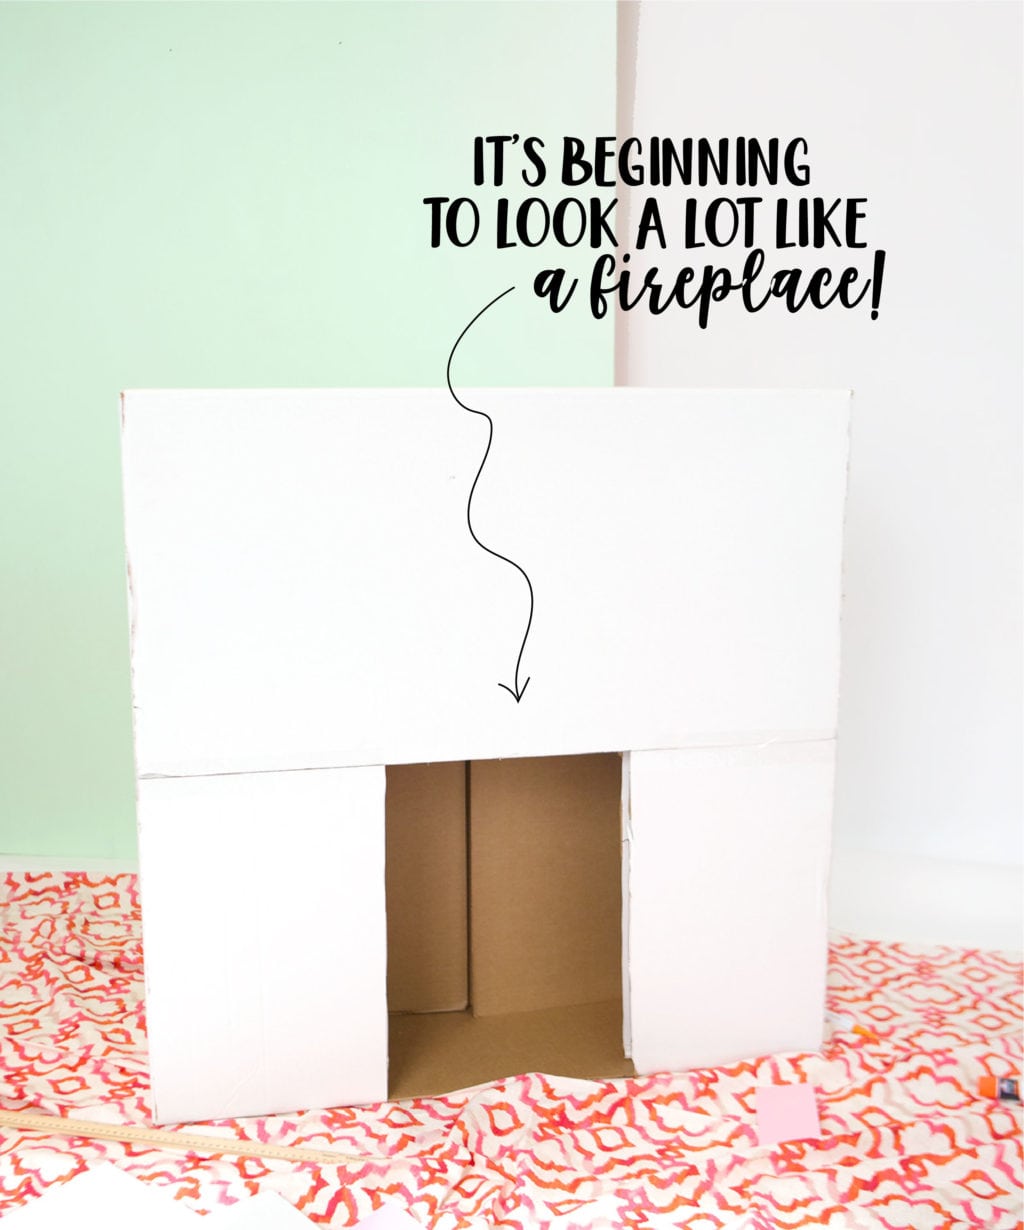 DIY Cardboard Box Fireplace | damask love